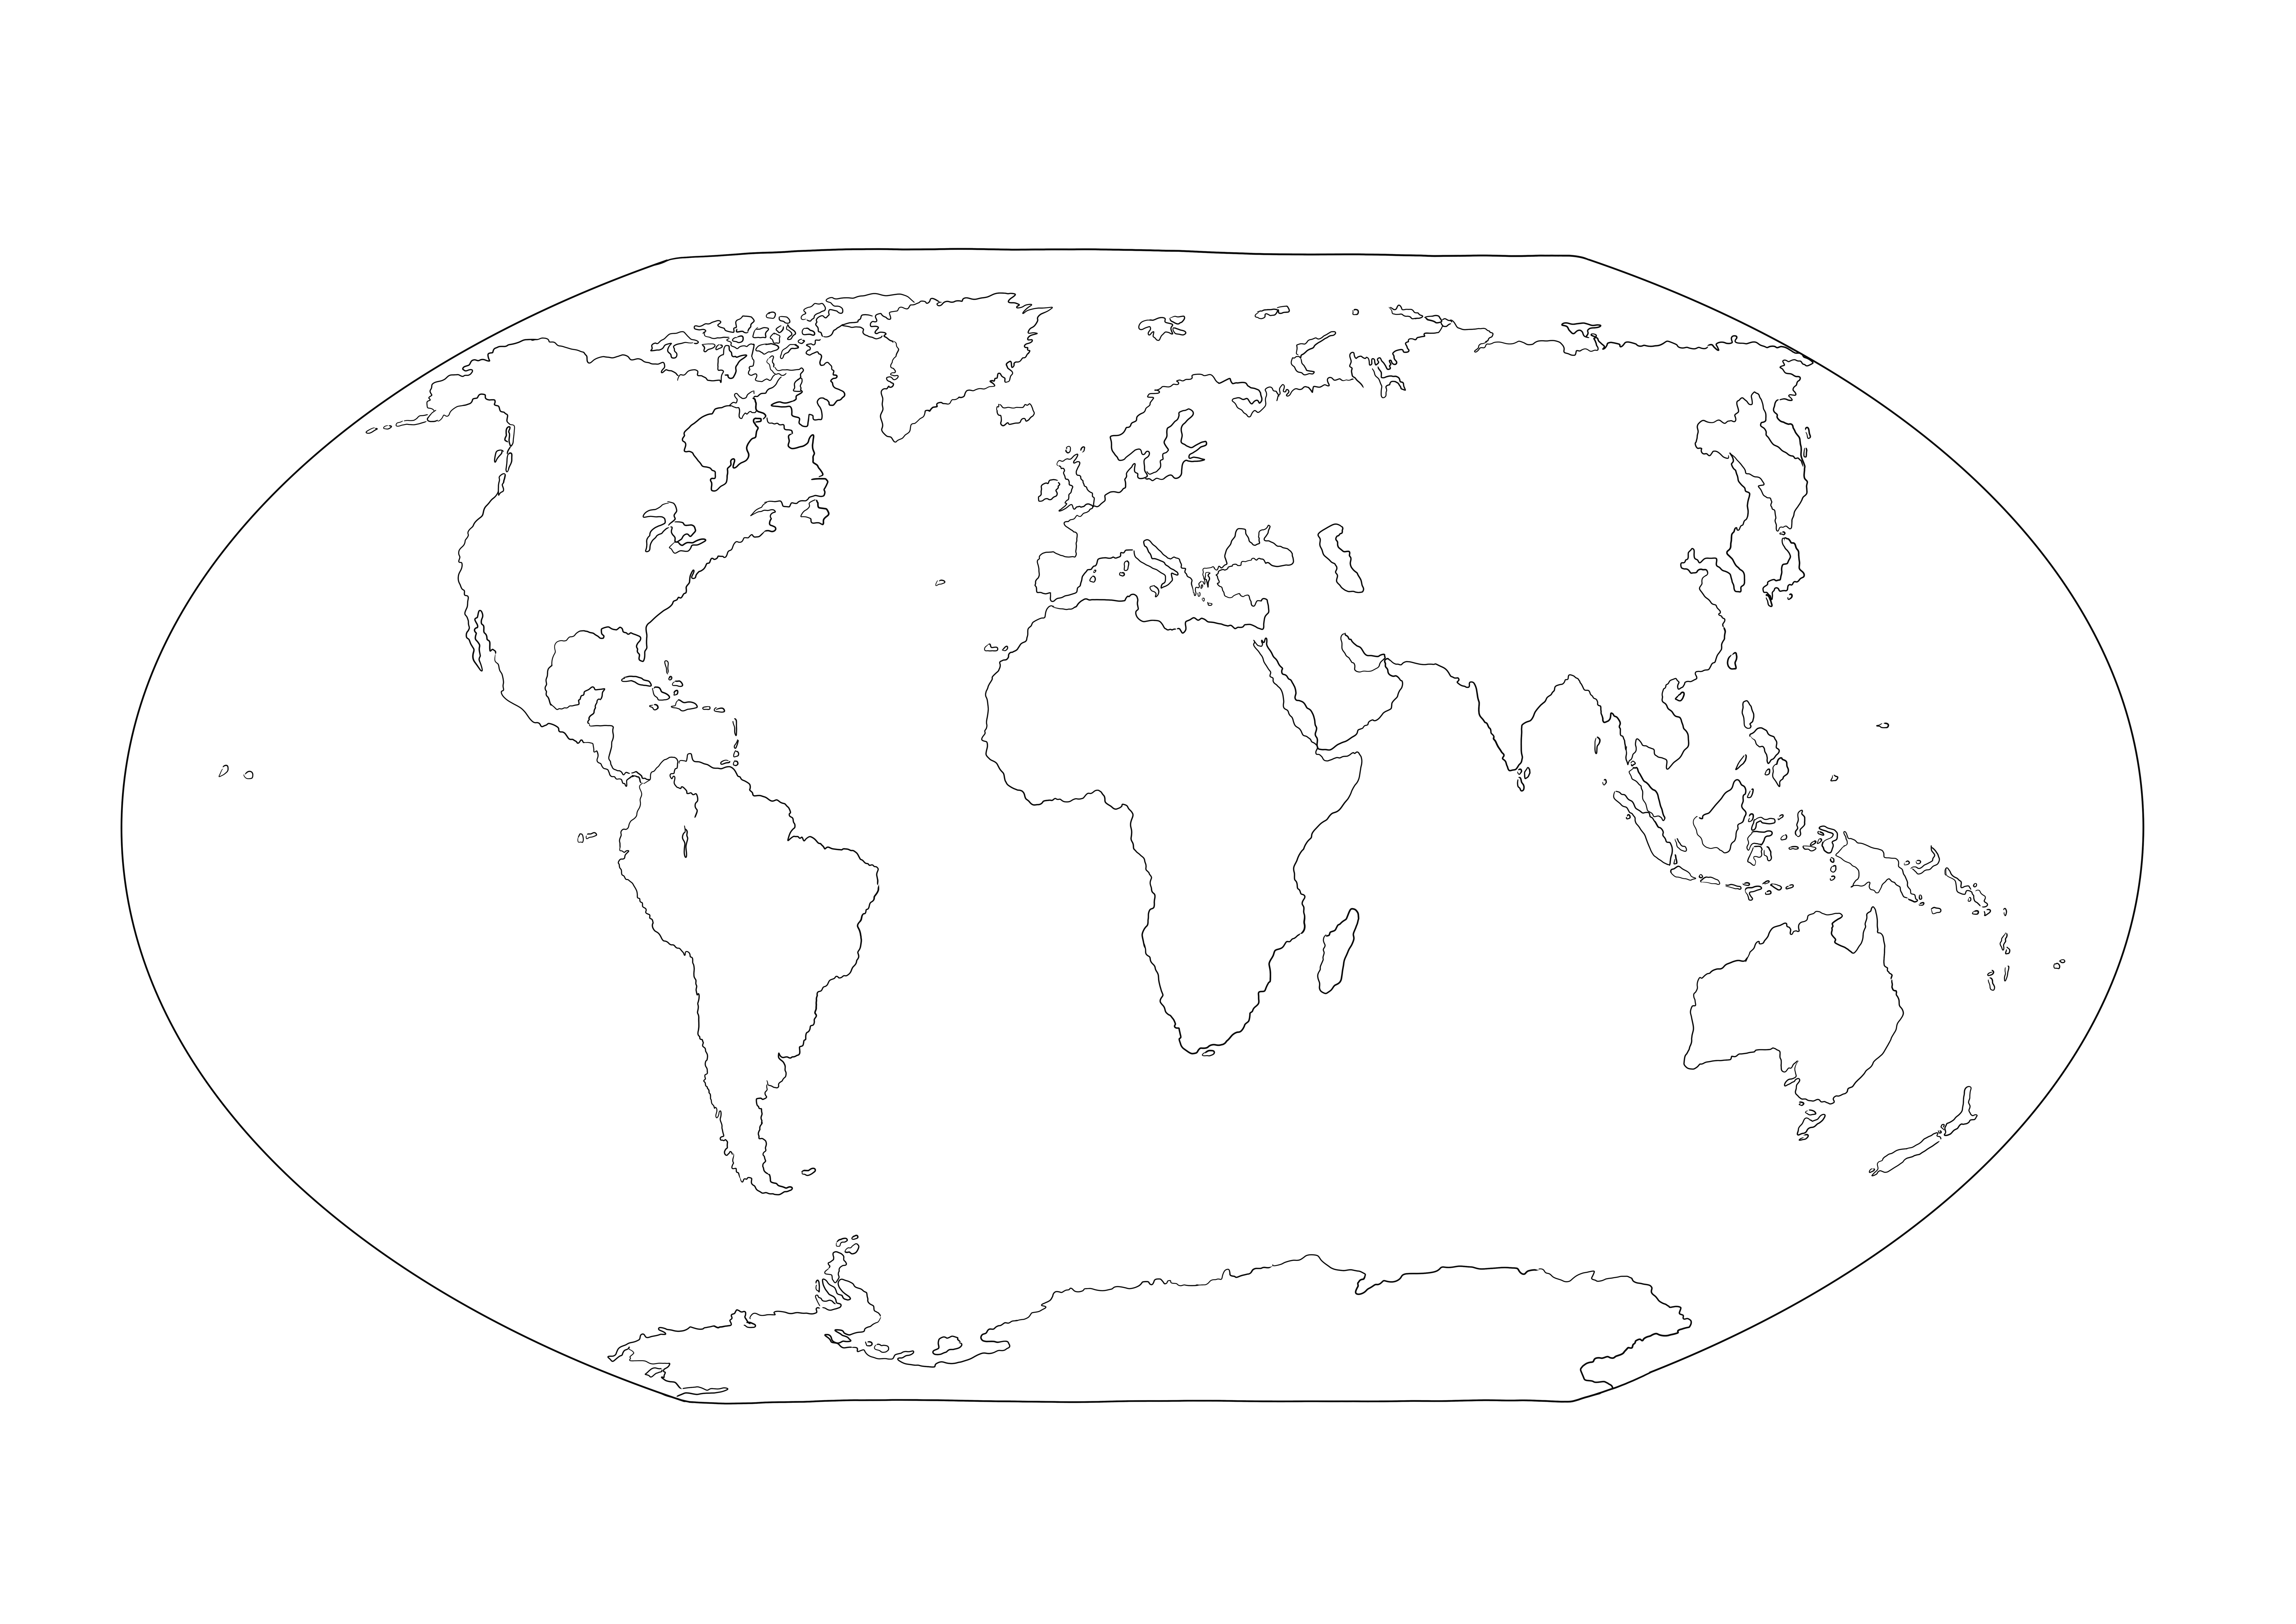 Cała strona mapy świata do bezpłatnego wydrukowania do prostego kolorowania